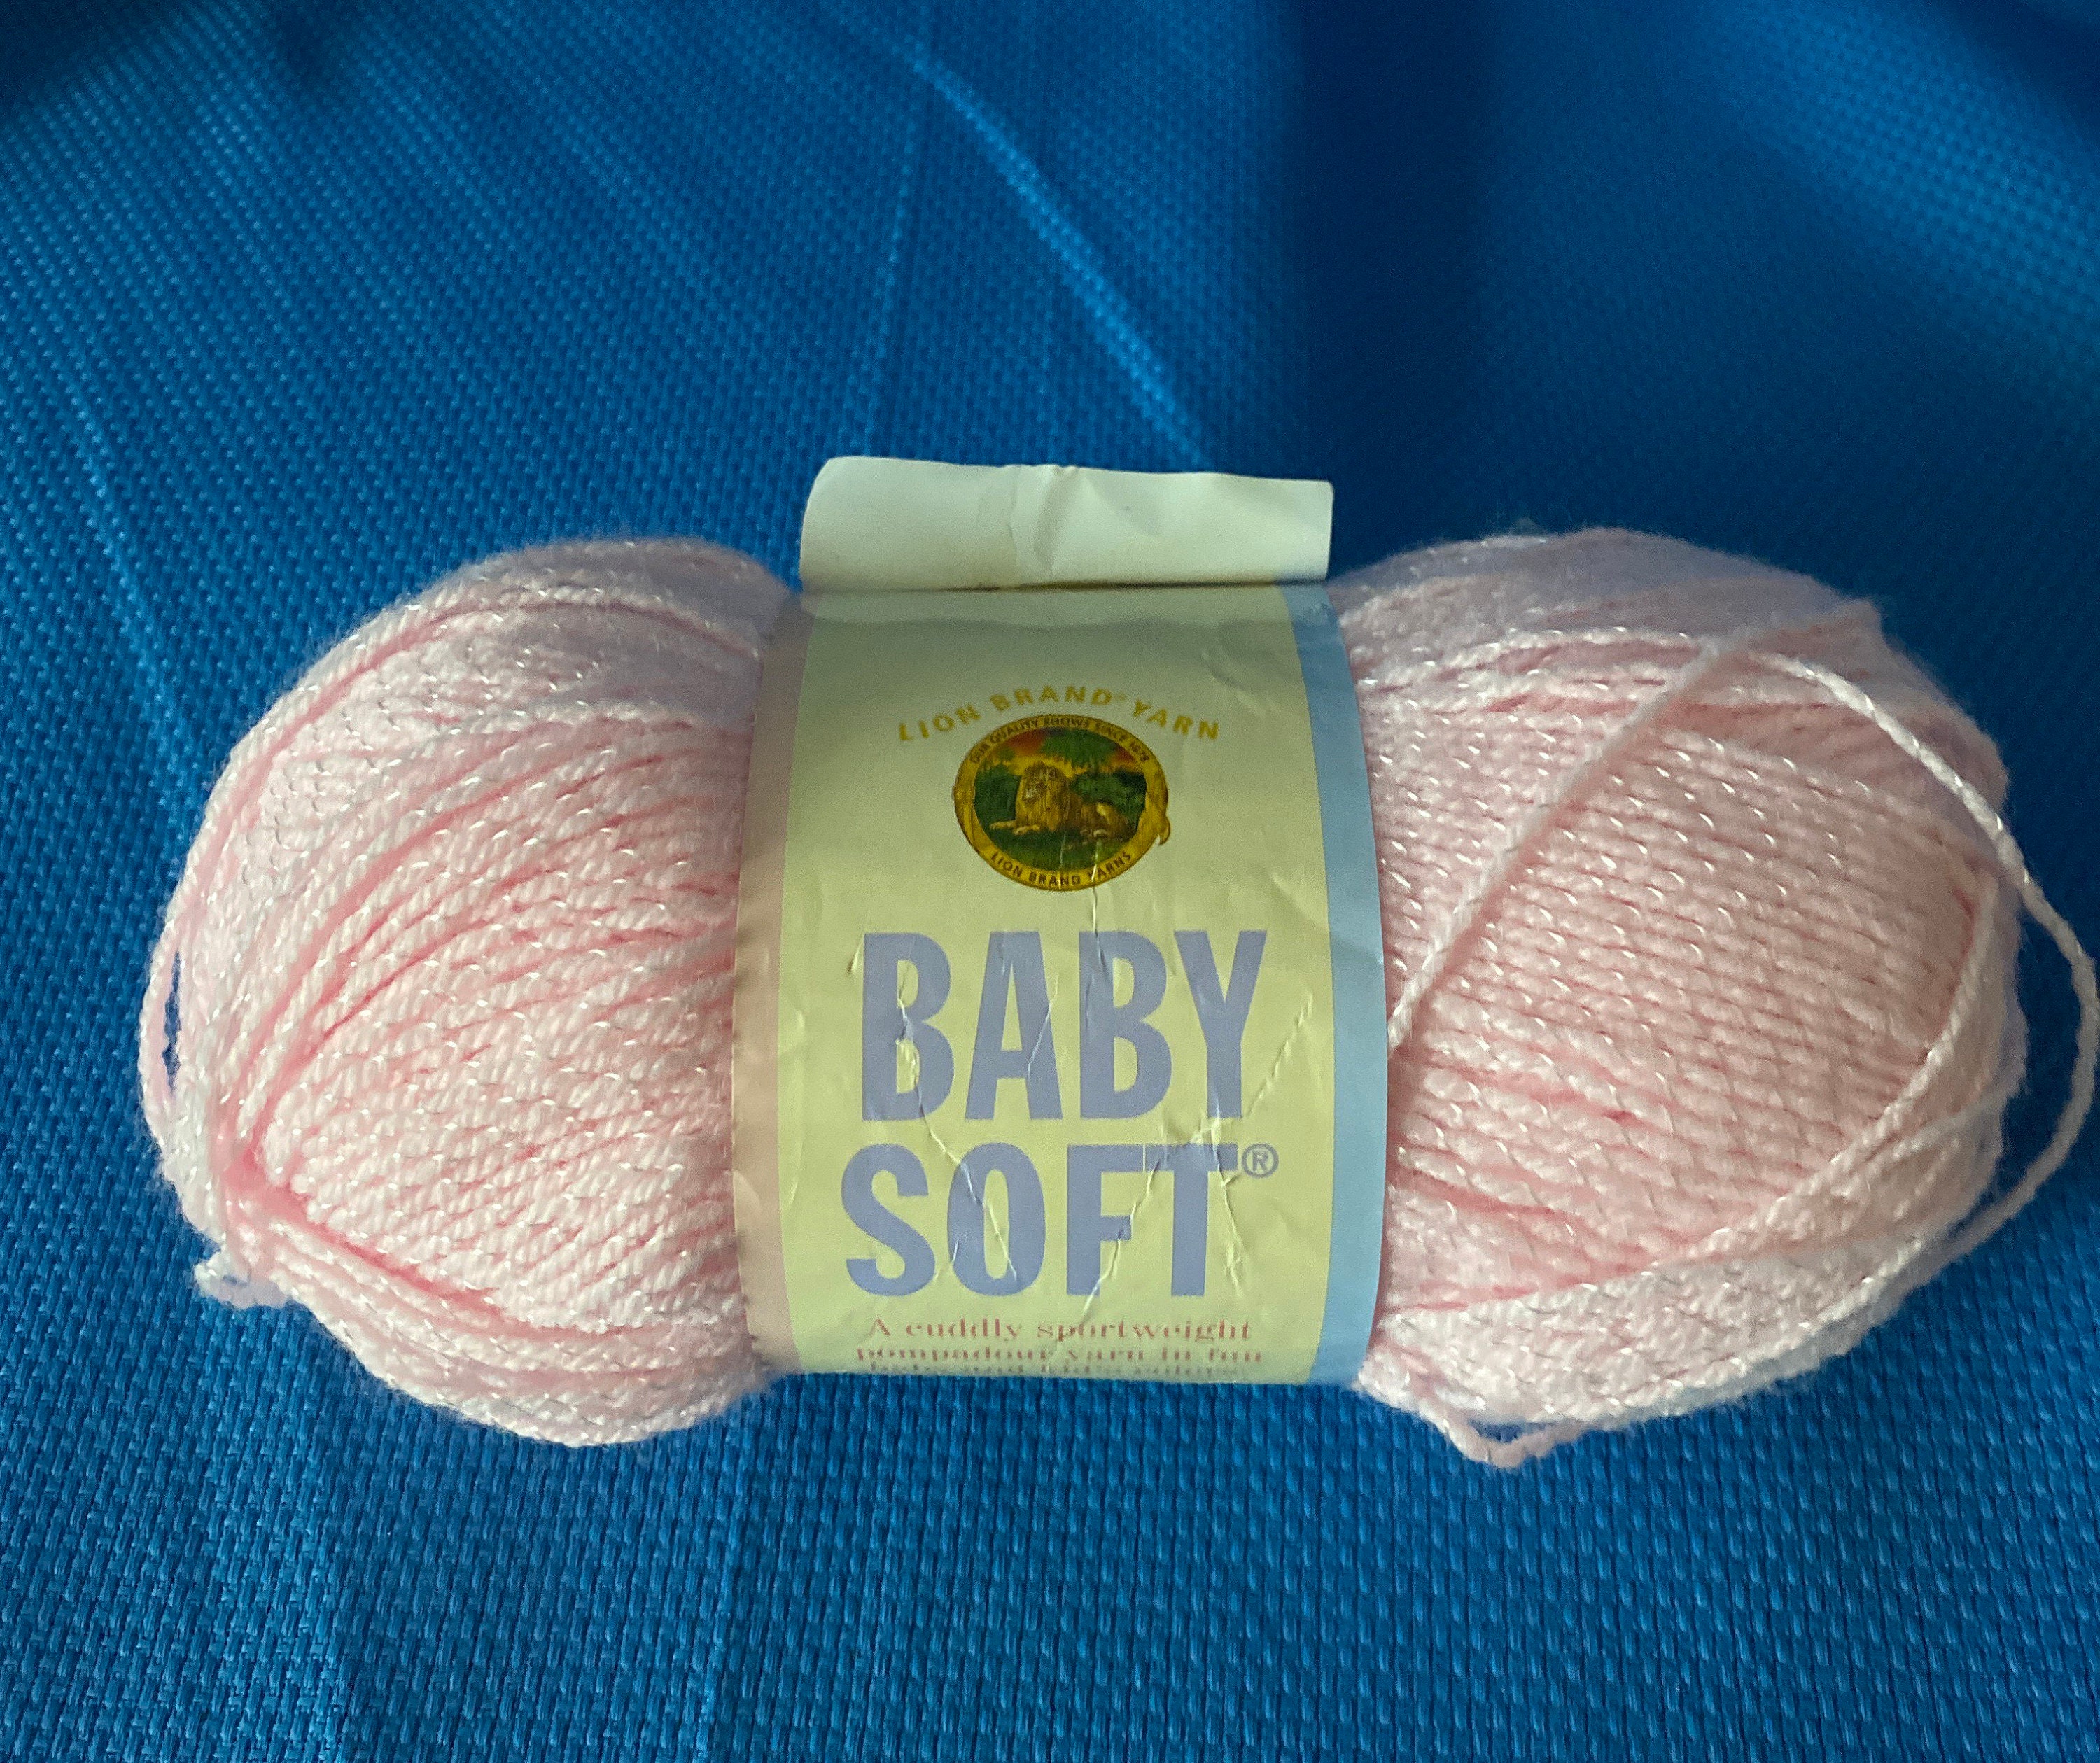 Lion Brand Yarn (1 Skein) Babysoft Baby Yarn Yarn, Twinkle Print